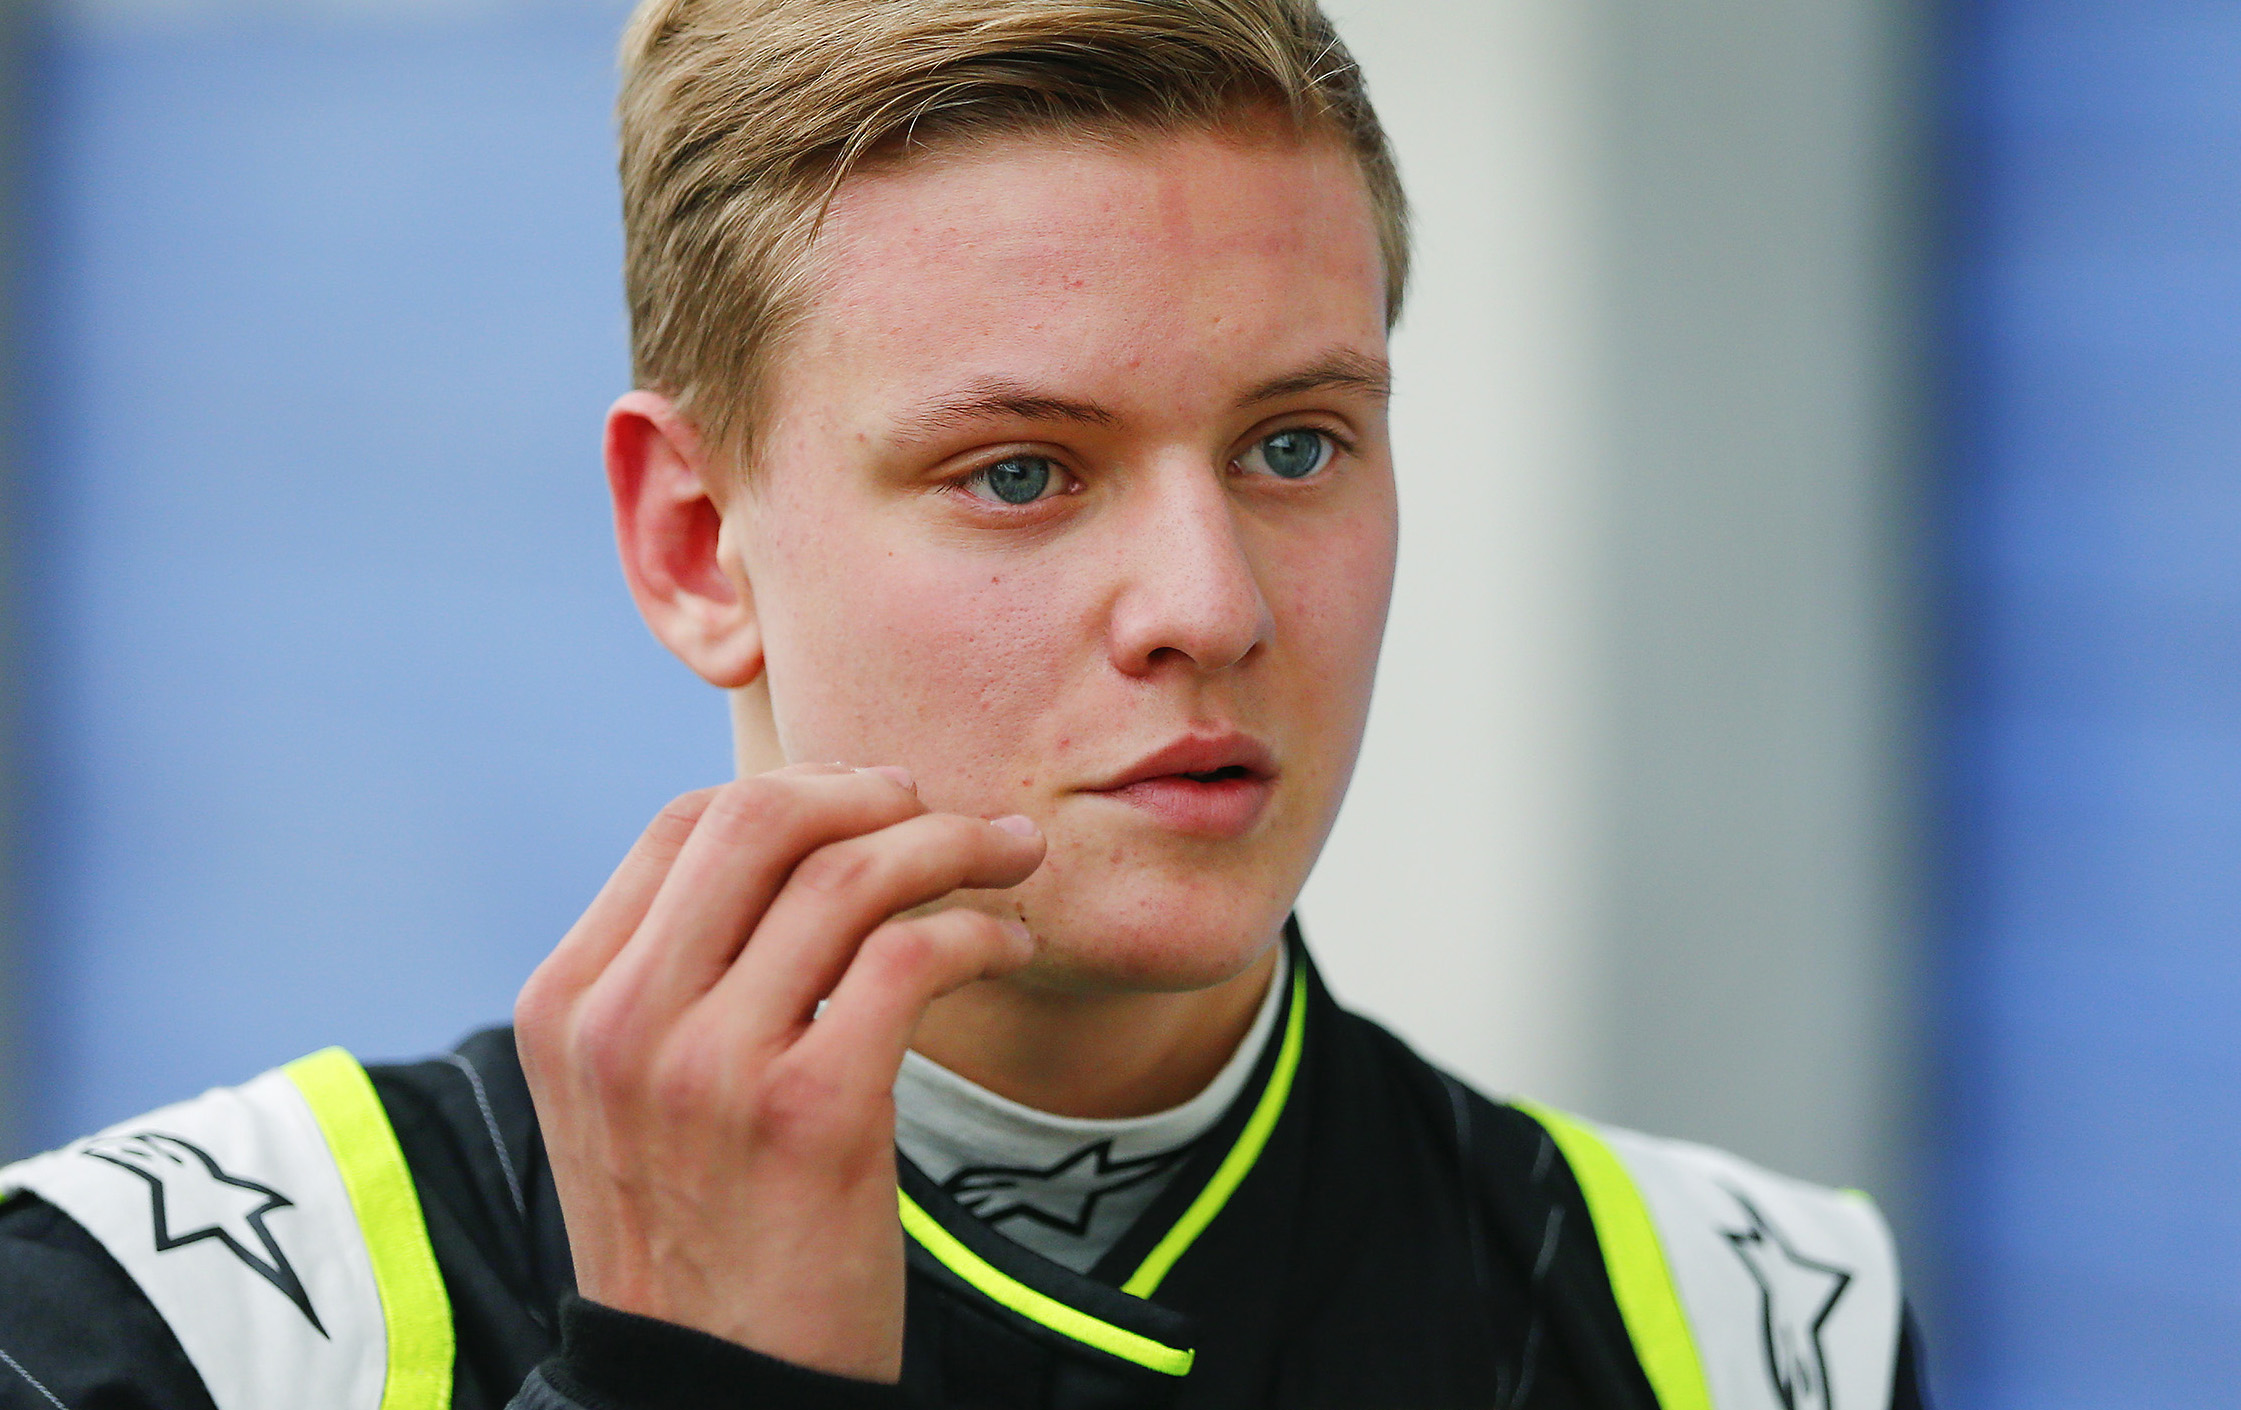 Πρώτη νίκη για τον υιό Schumacher στο γερμανικό πρωτάθλημα Formula 4